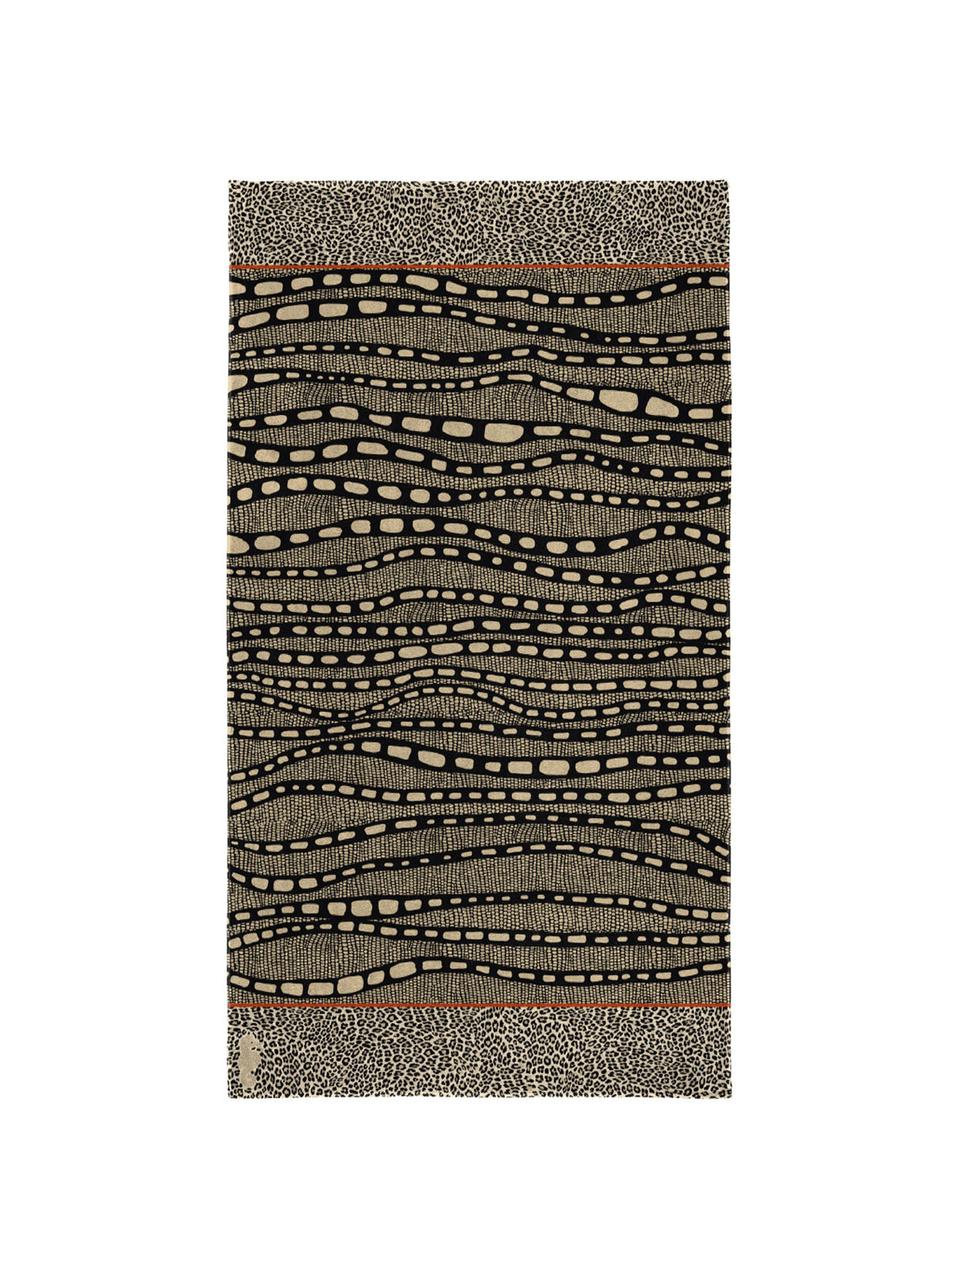 Telo mare Idris, Velour (cotone)
Qualità del tessuto di peso medio, 420 g/m², Brunastro, tonalità beige, nero, arancione, P 100 x L 180 cm